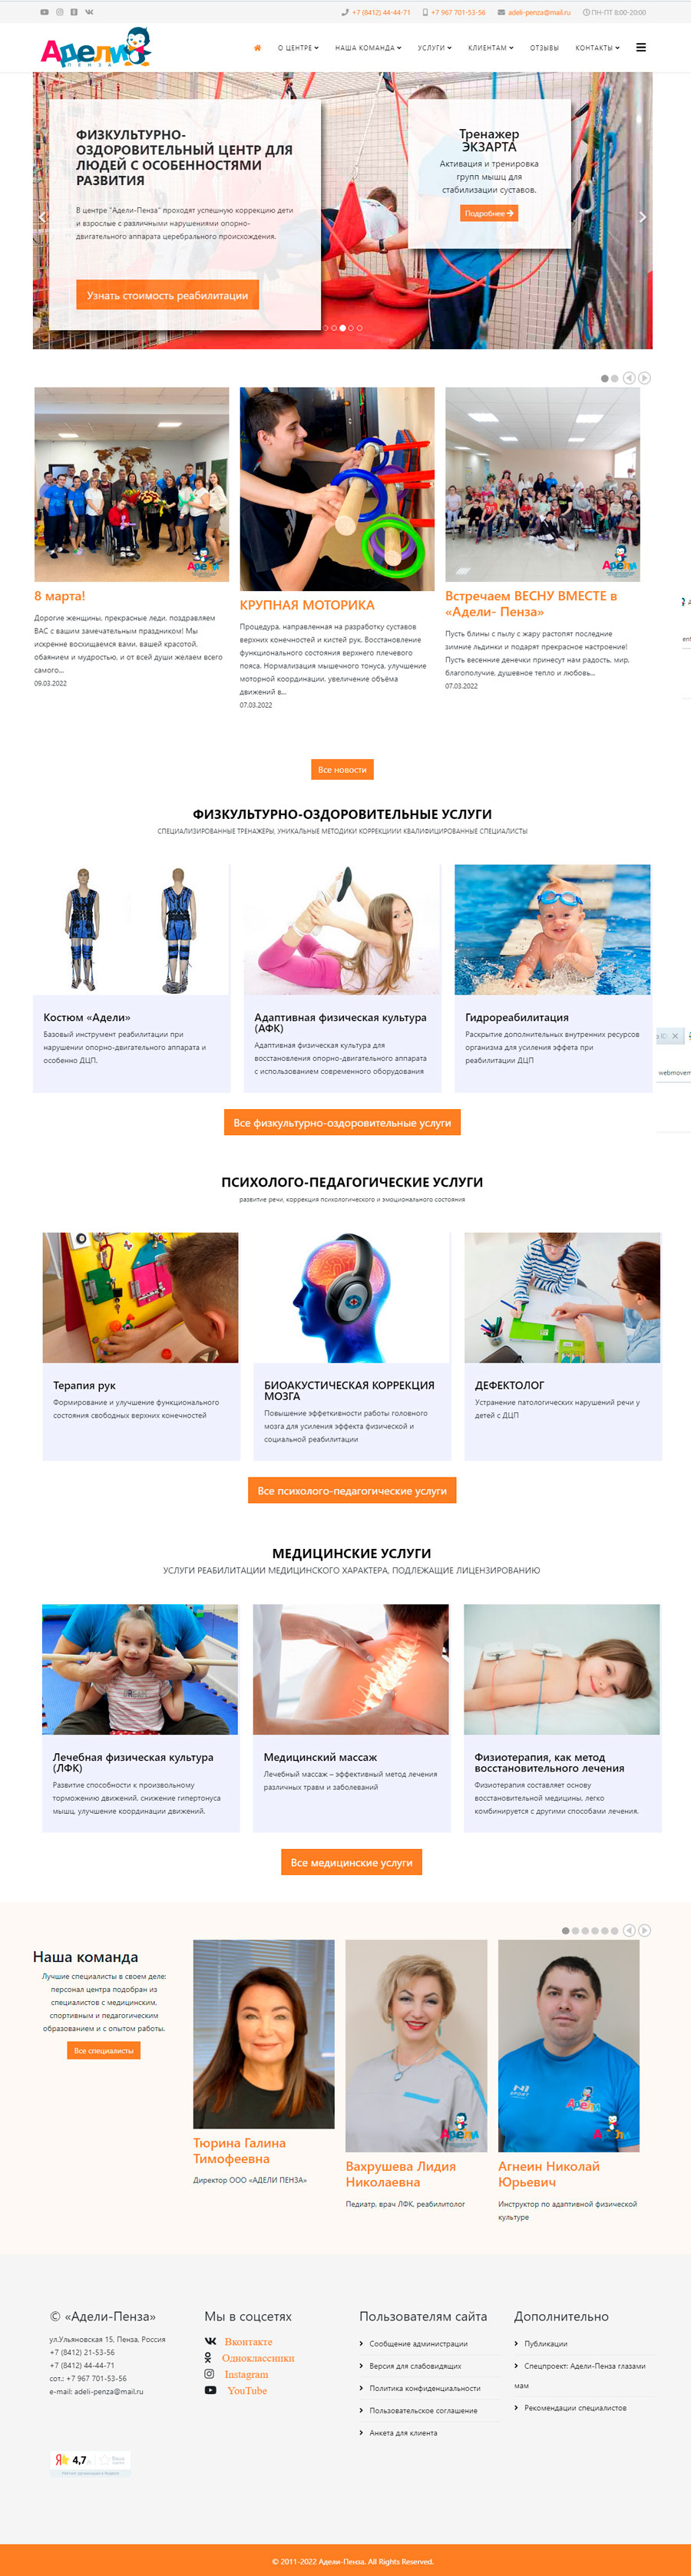 новый дизайн сайта adelipnz.ru